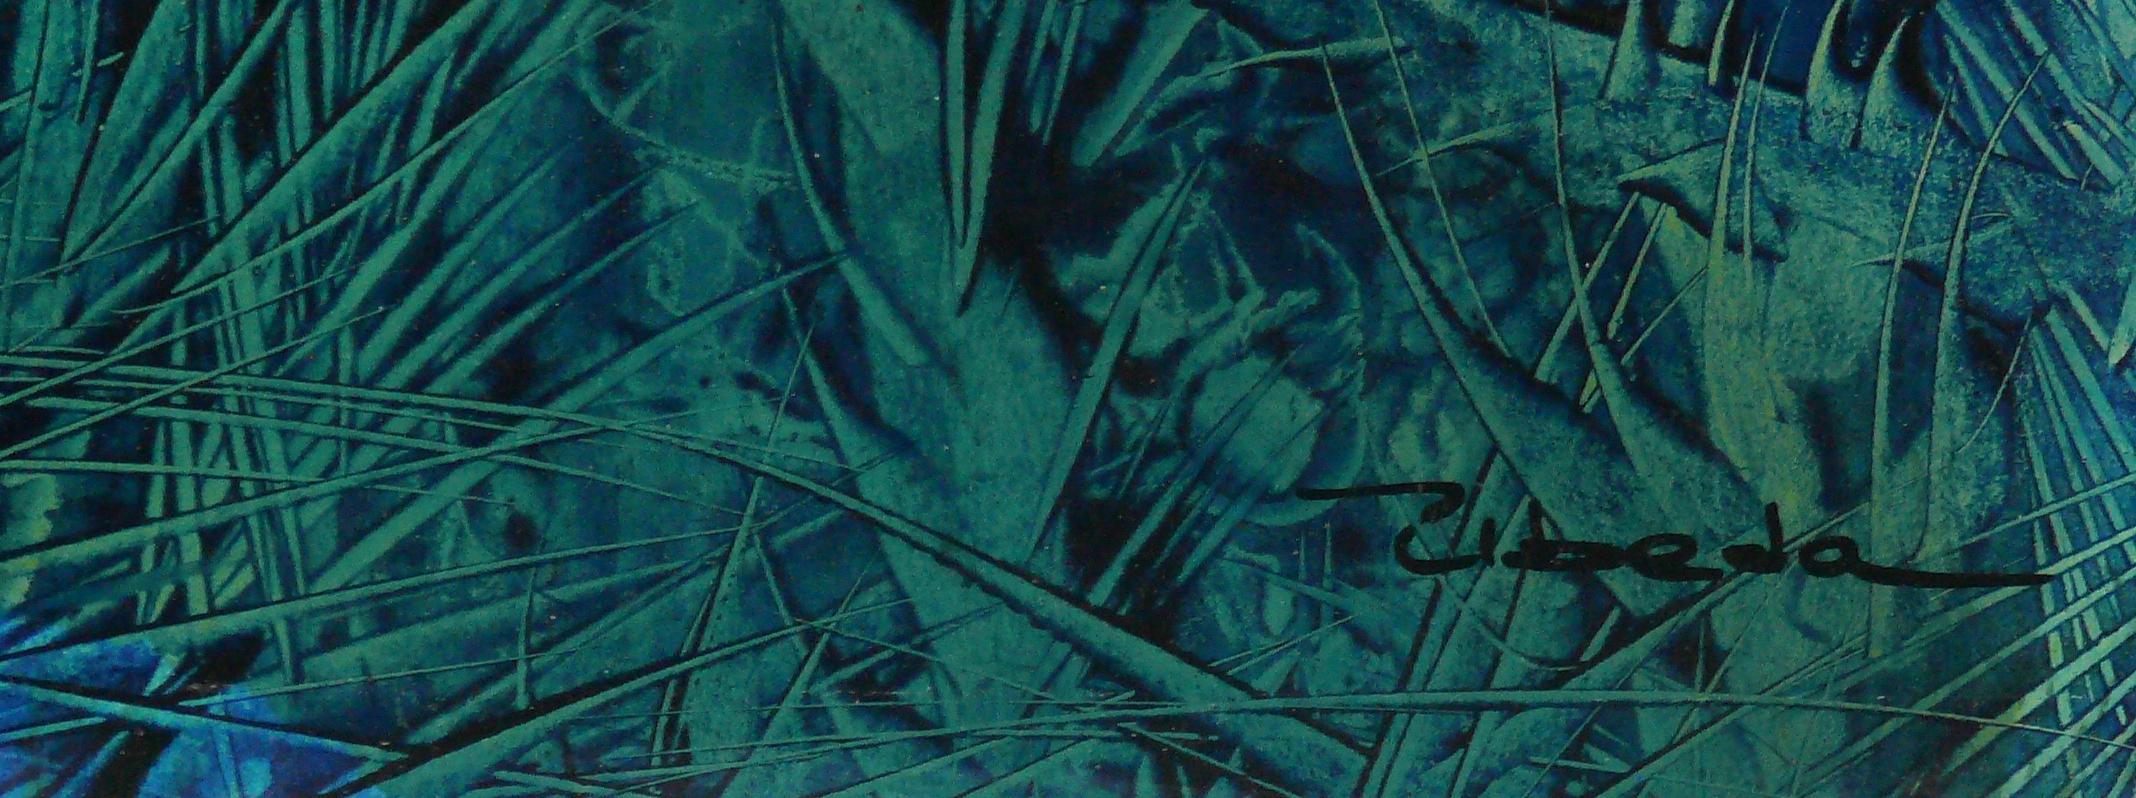 Serie Unter dem Meer, Nr. 10. Úbeda. Öl- Fantasie- unterwasserlandschaft in Blau und Grün. (Moderne), Painting, von Ángel Luis Úbeda